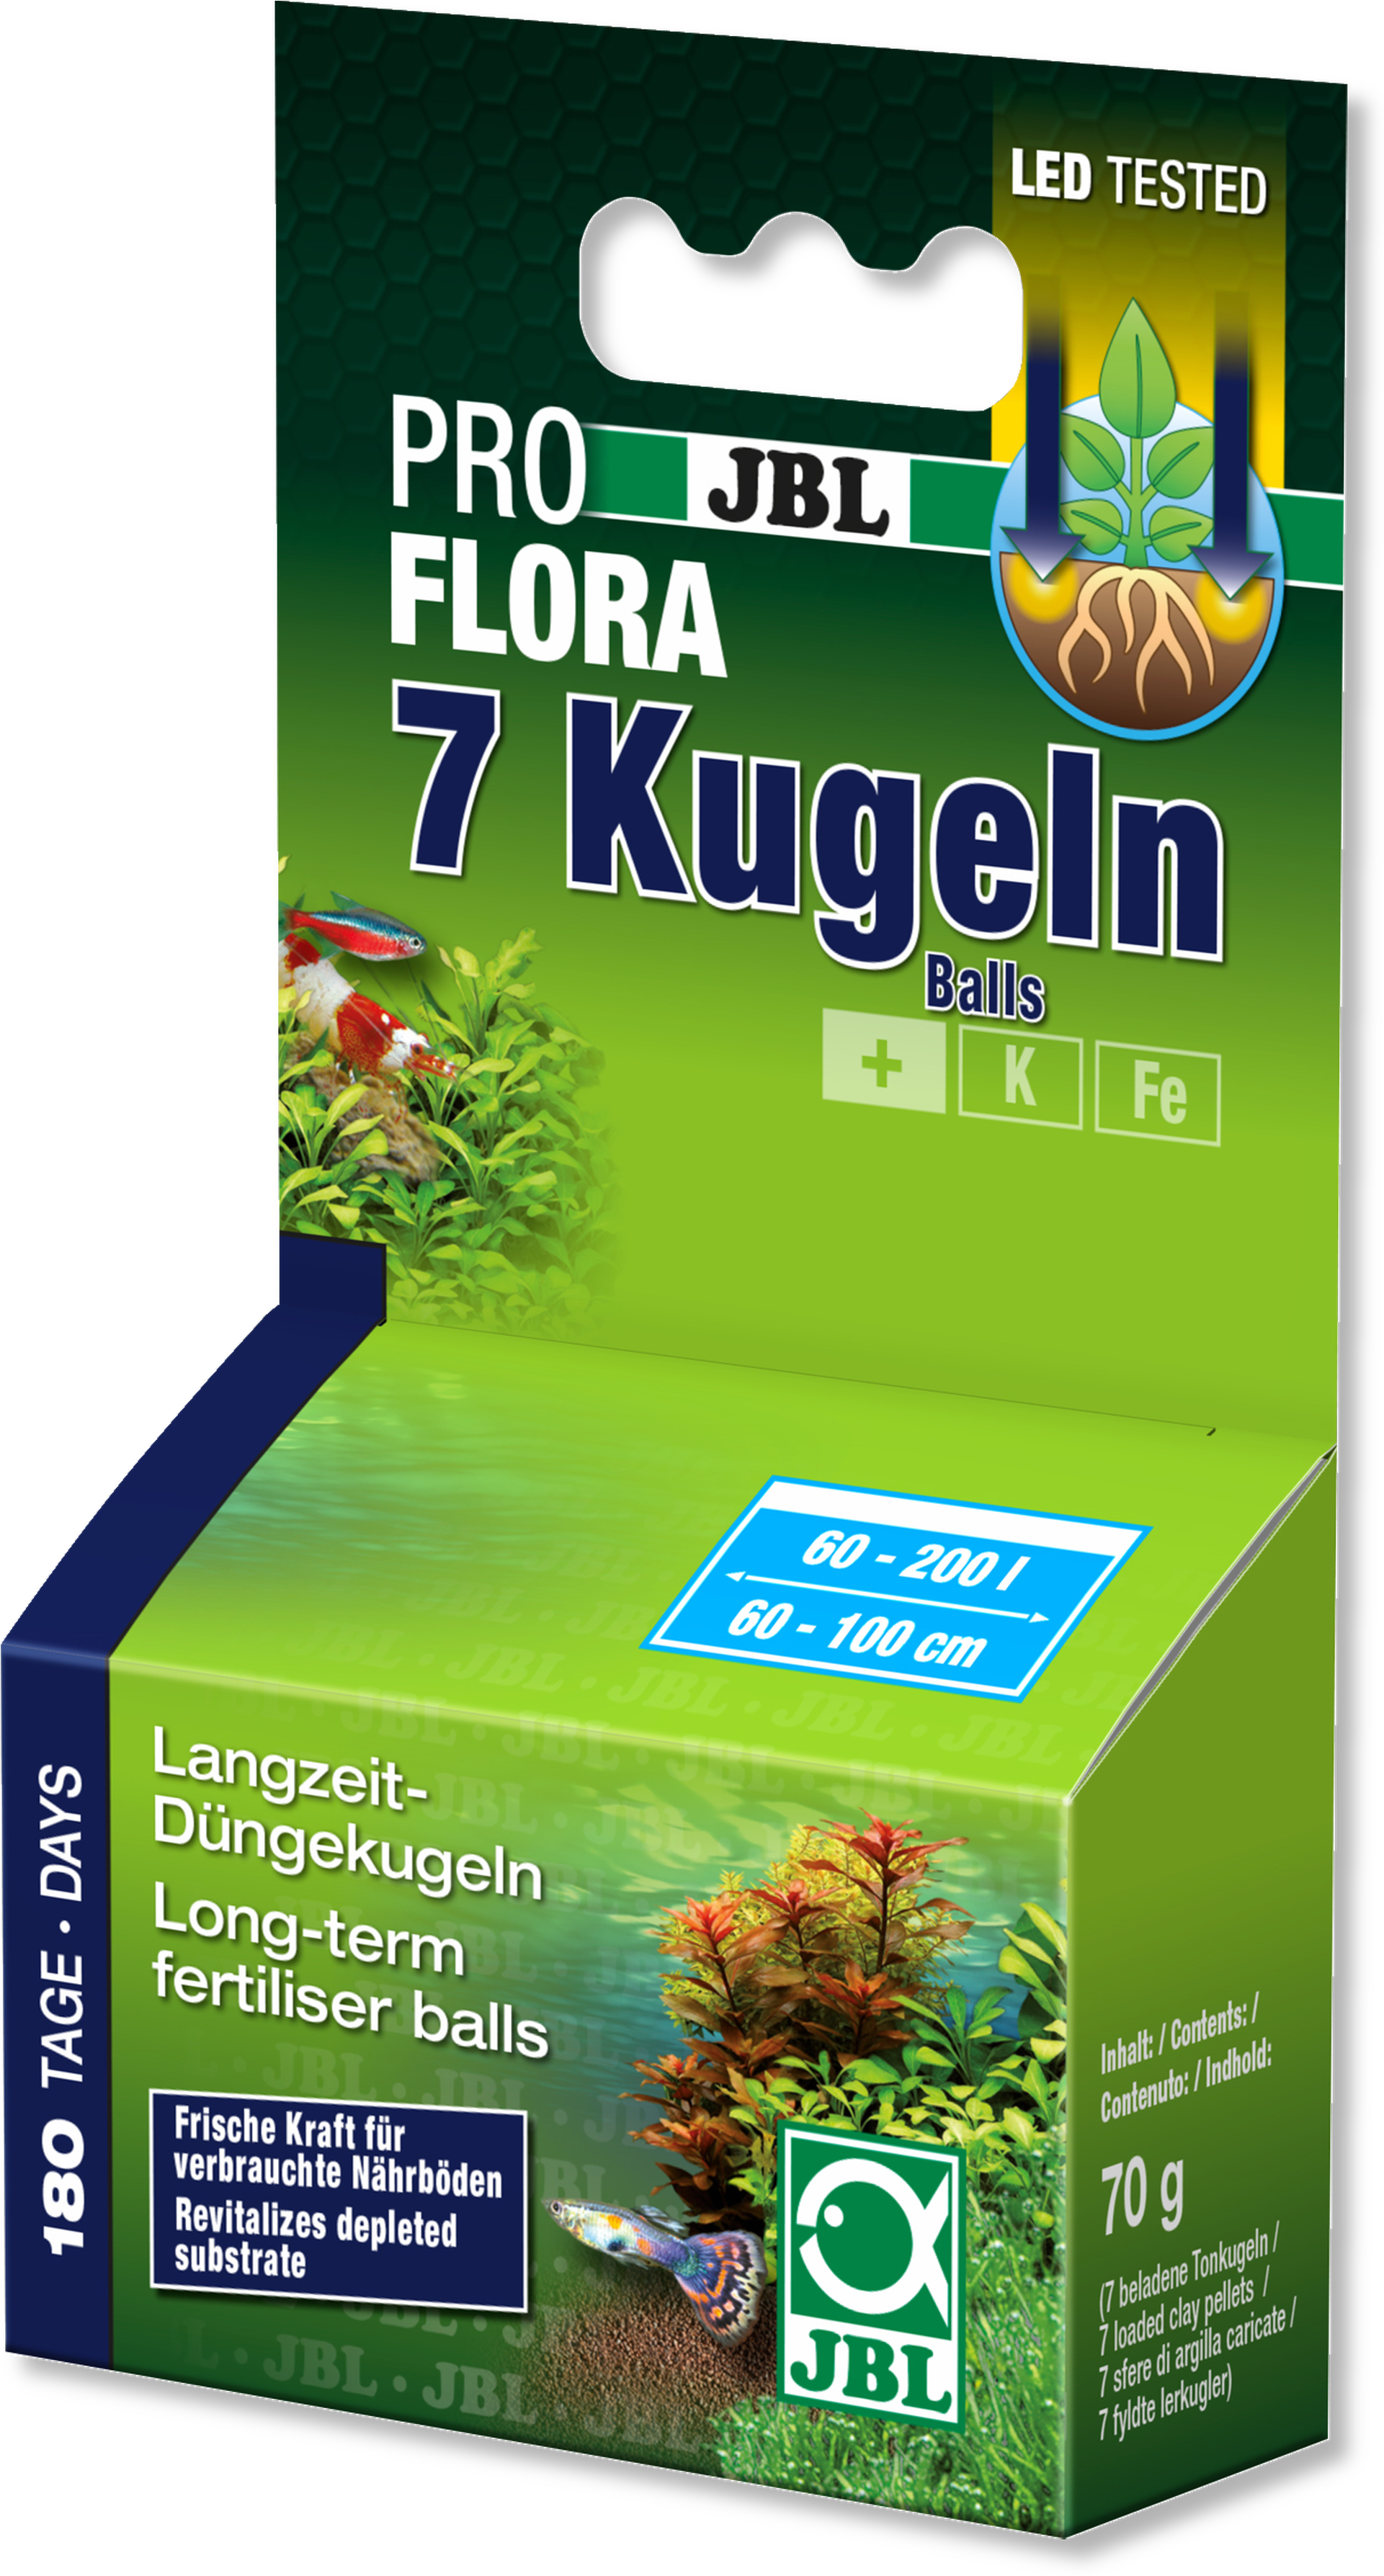 J B L Pro Flora7 Kugeln Fertilizer Balls Packaging